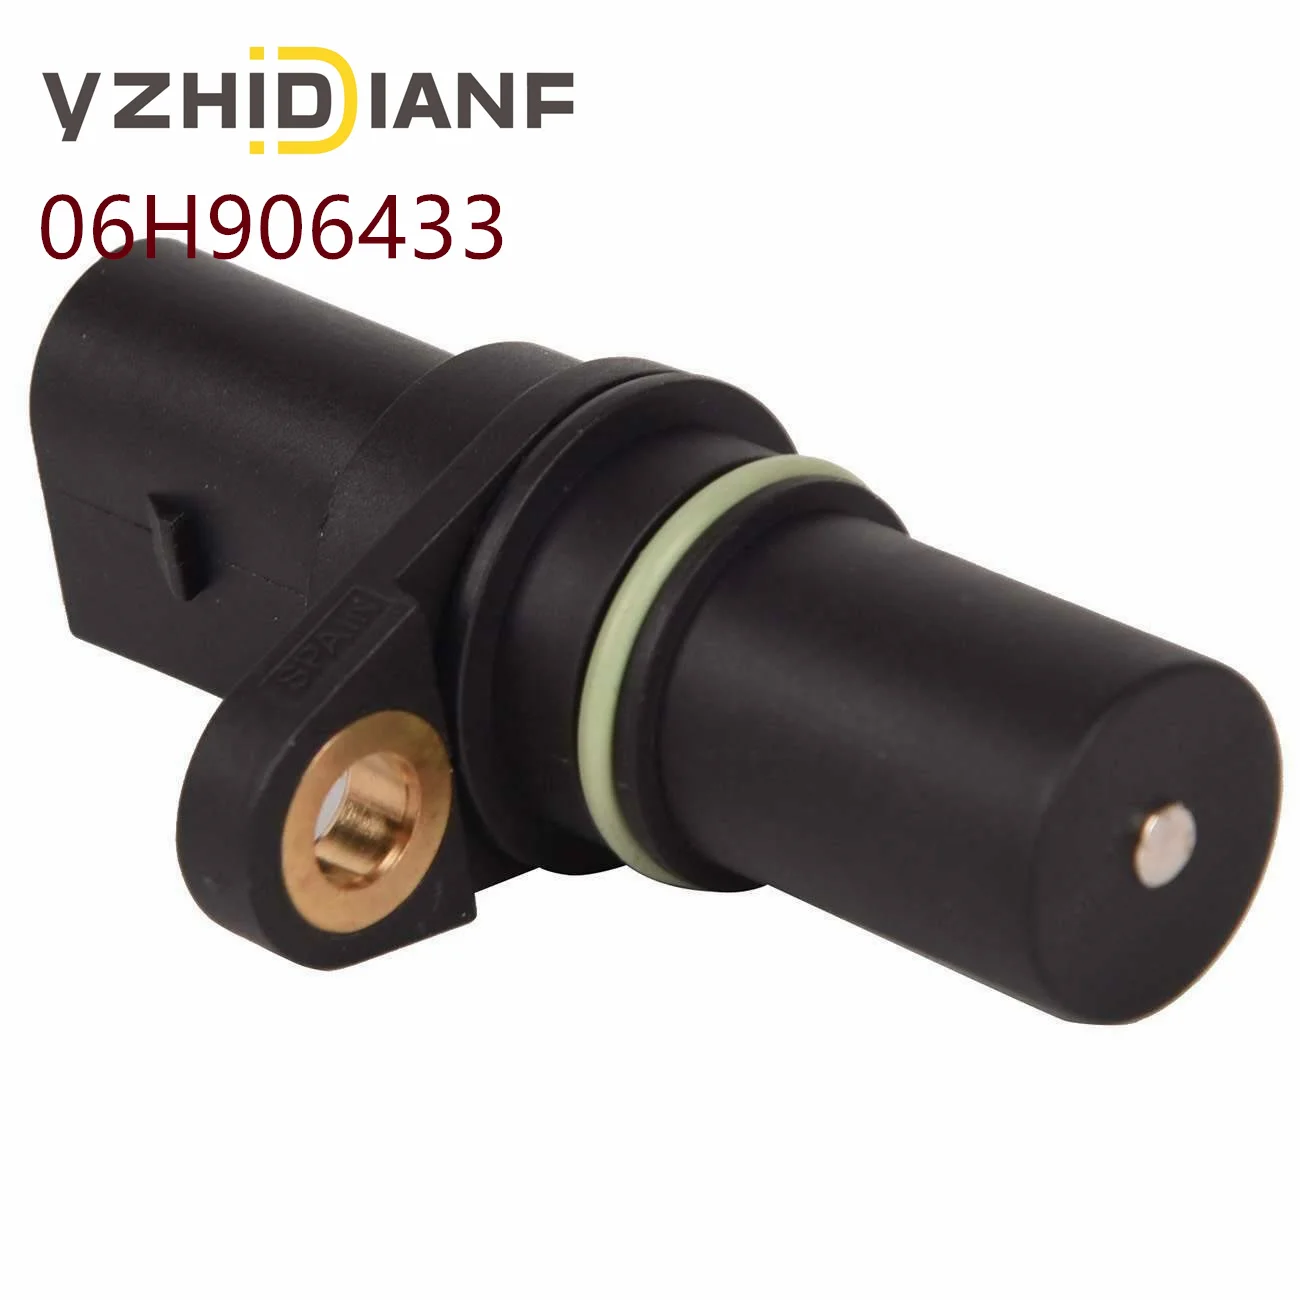 

Crank Crankshaft Position Sensor For AUDI- A3 B8 Q3 Q5 TT VOLKSWAGEN-Beetle Golf-Passat CC EOS Tiguan-2.0T 06H906433 06H 906 433